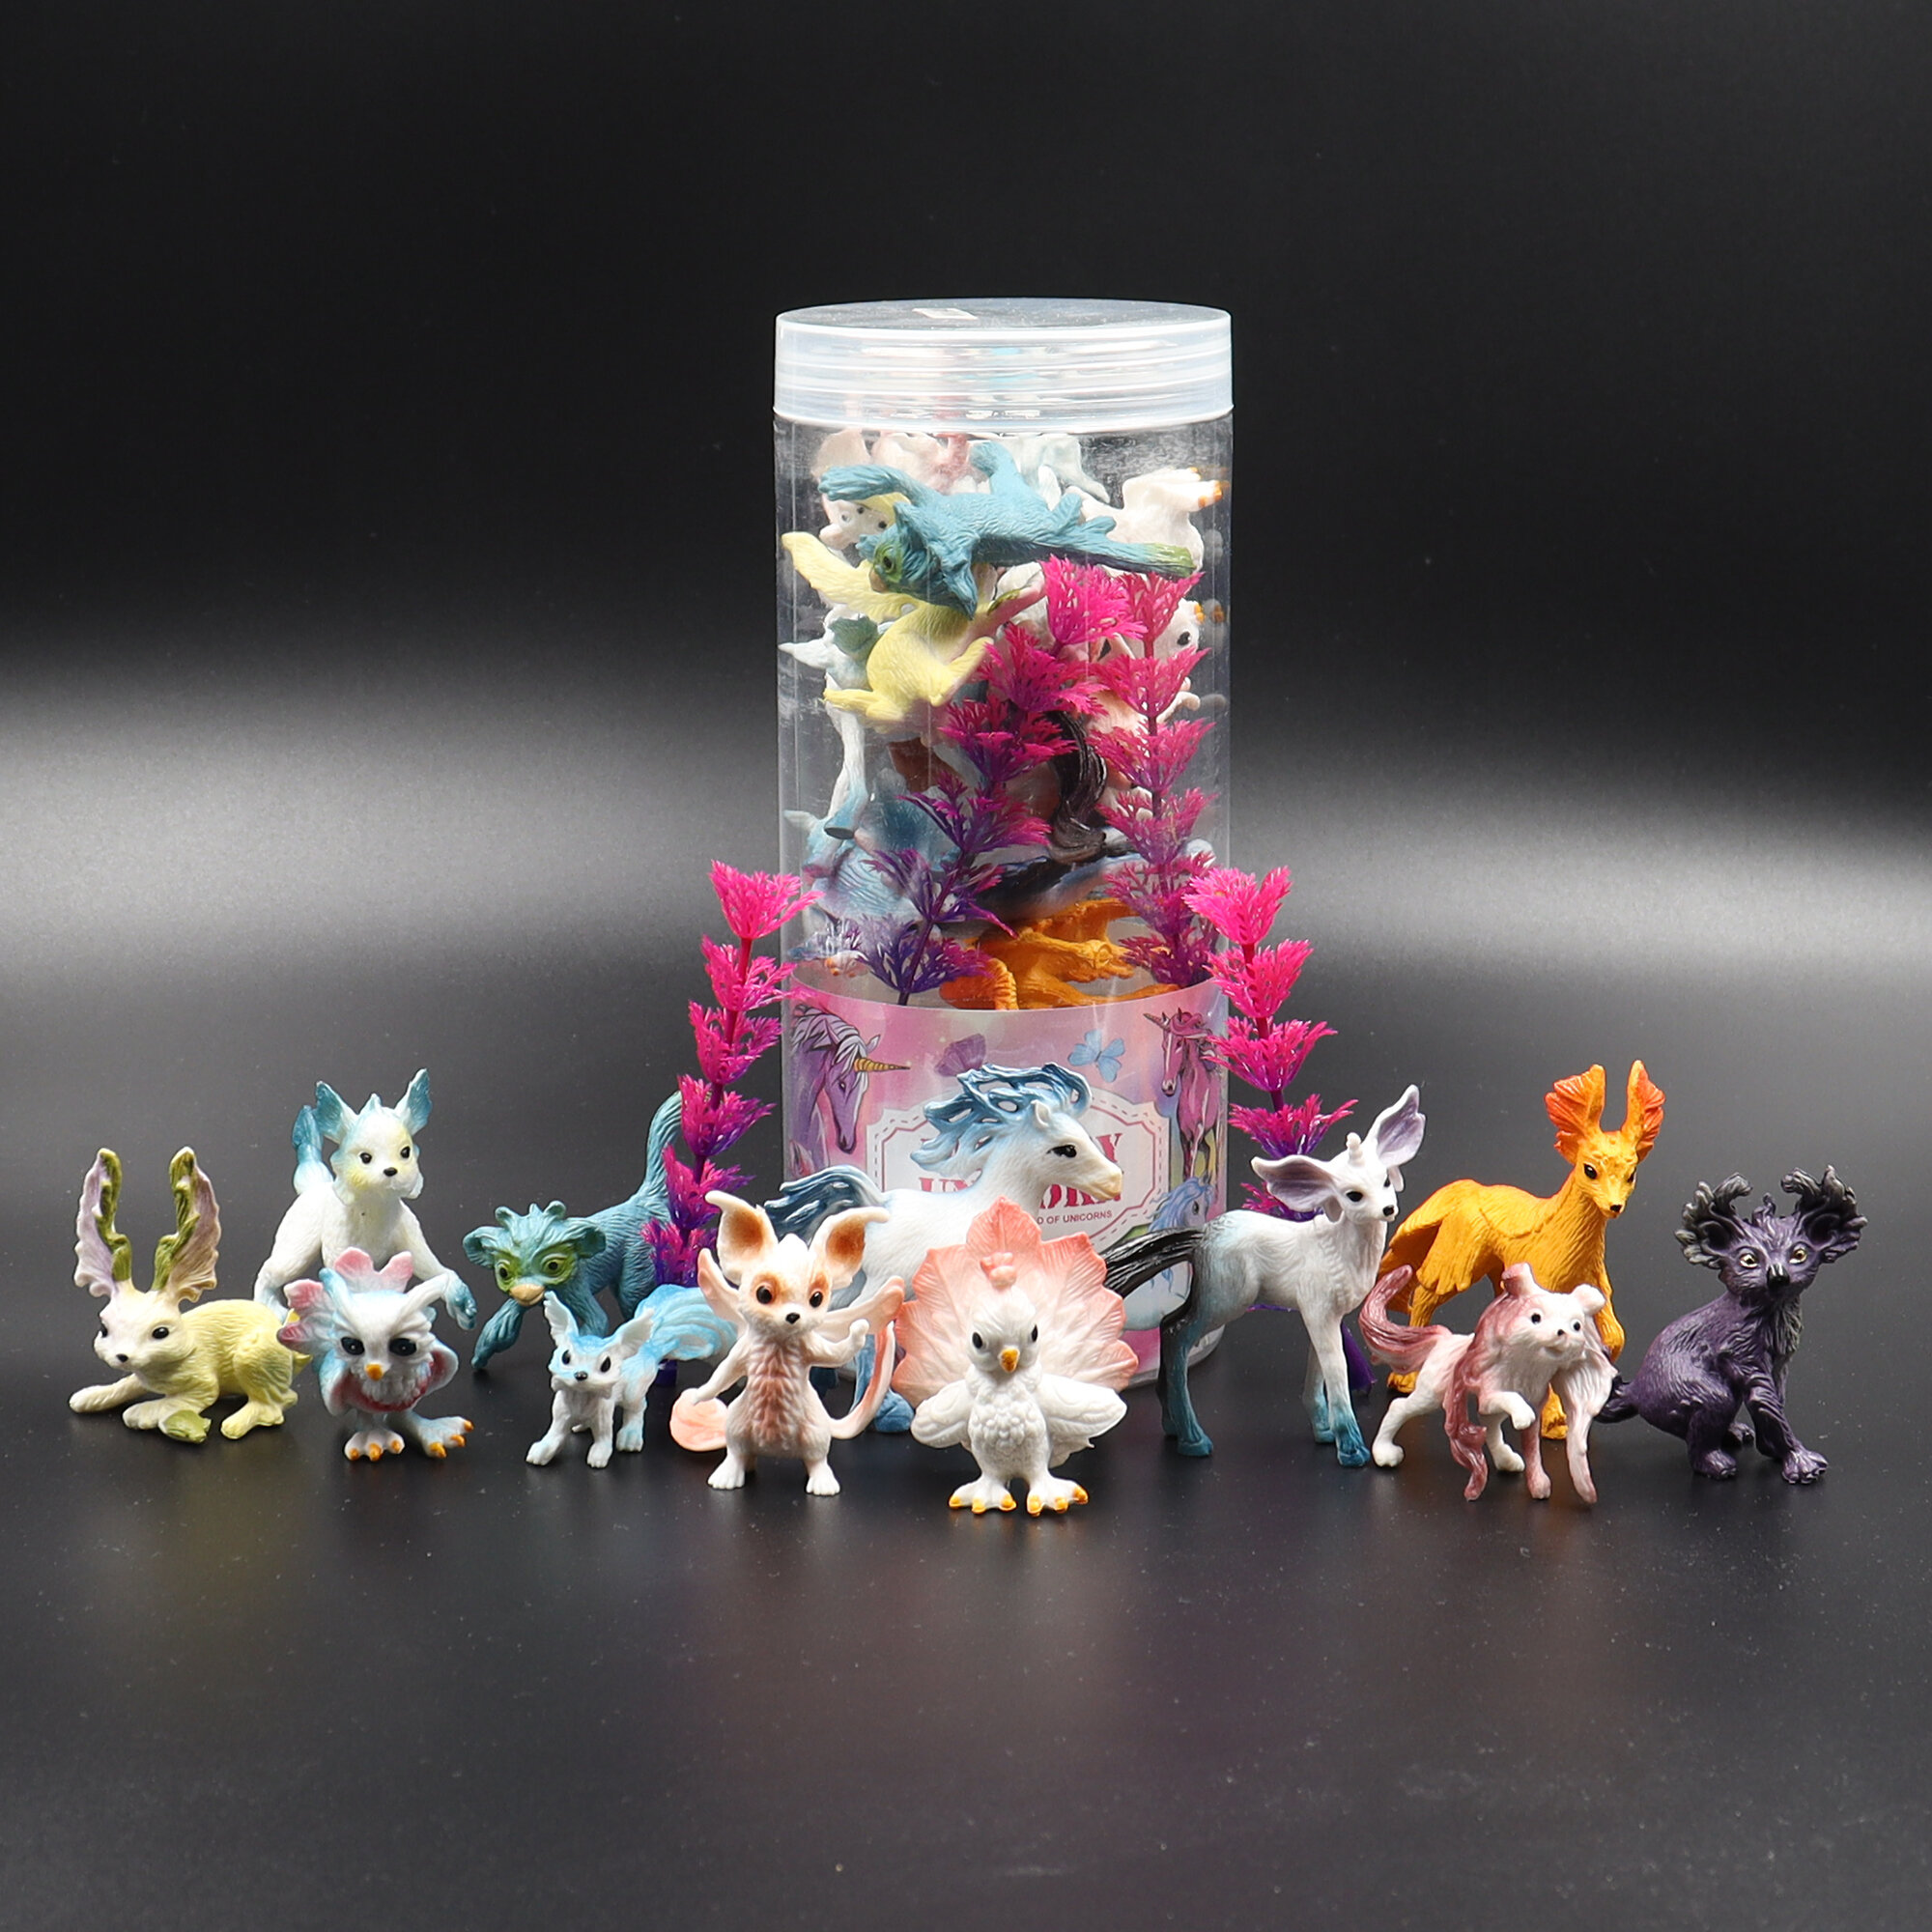 Фигурки сказочных животных детский игровой набор Zateyo Фэнтези существа, игрушка для детей коллекционная, игровой набор 12 шт.